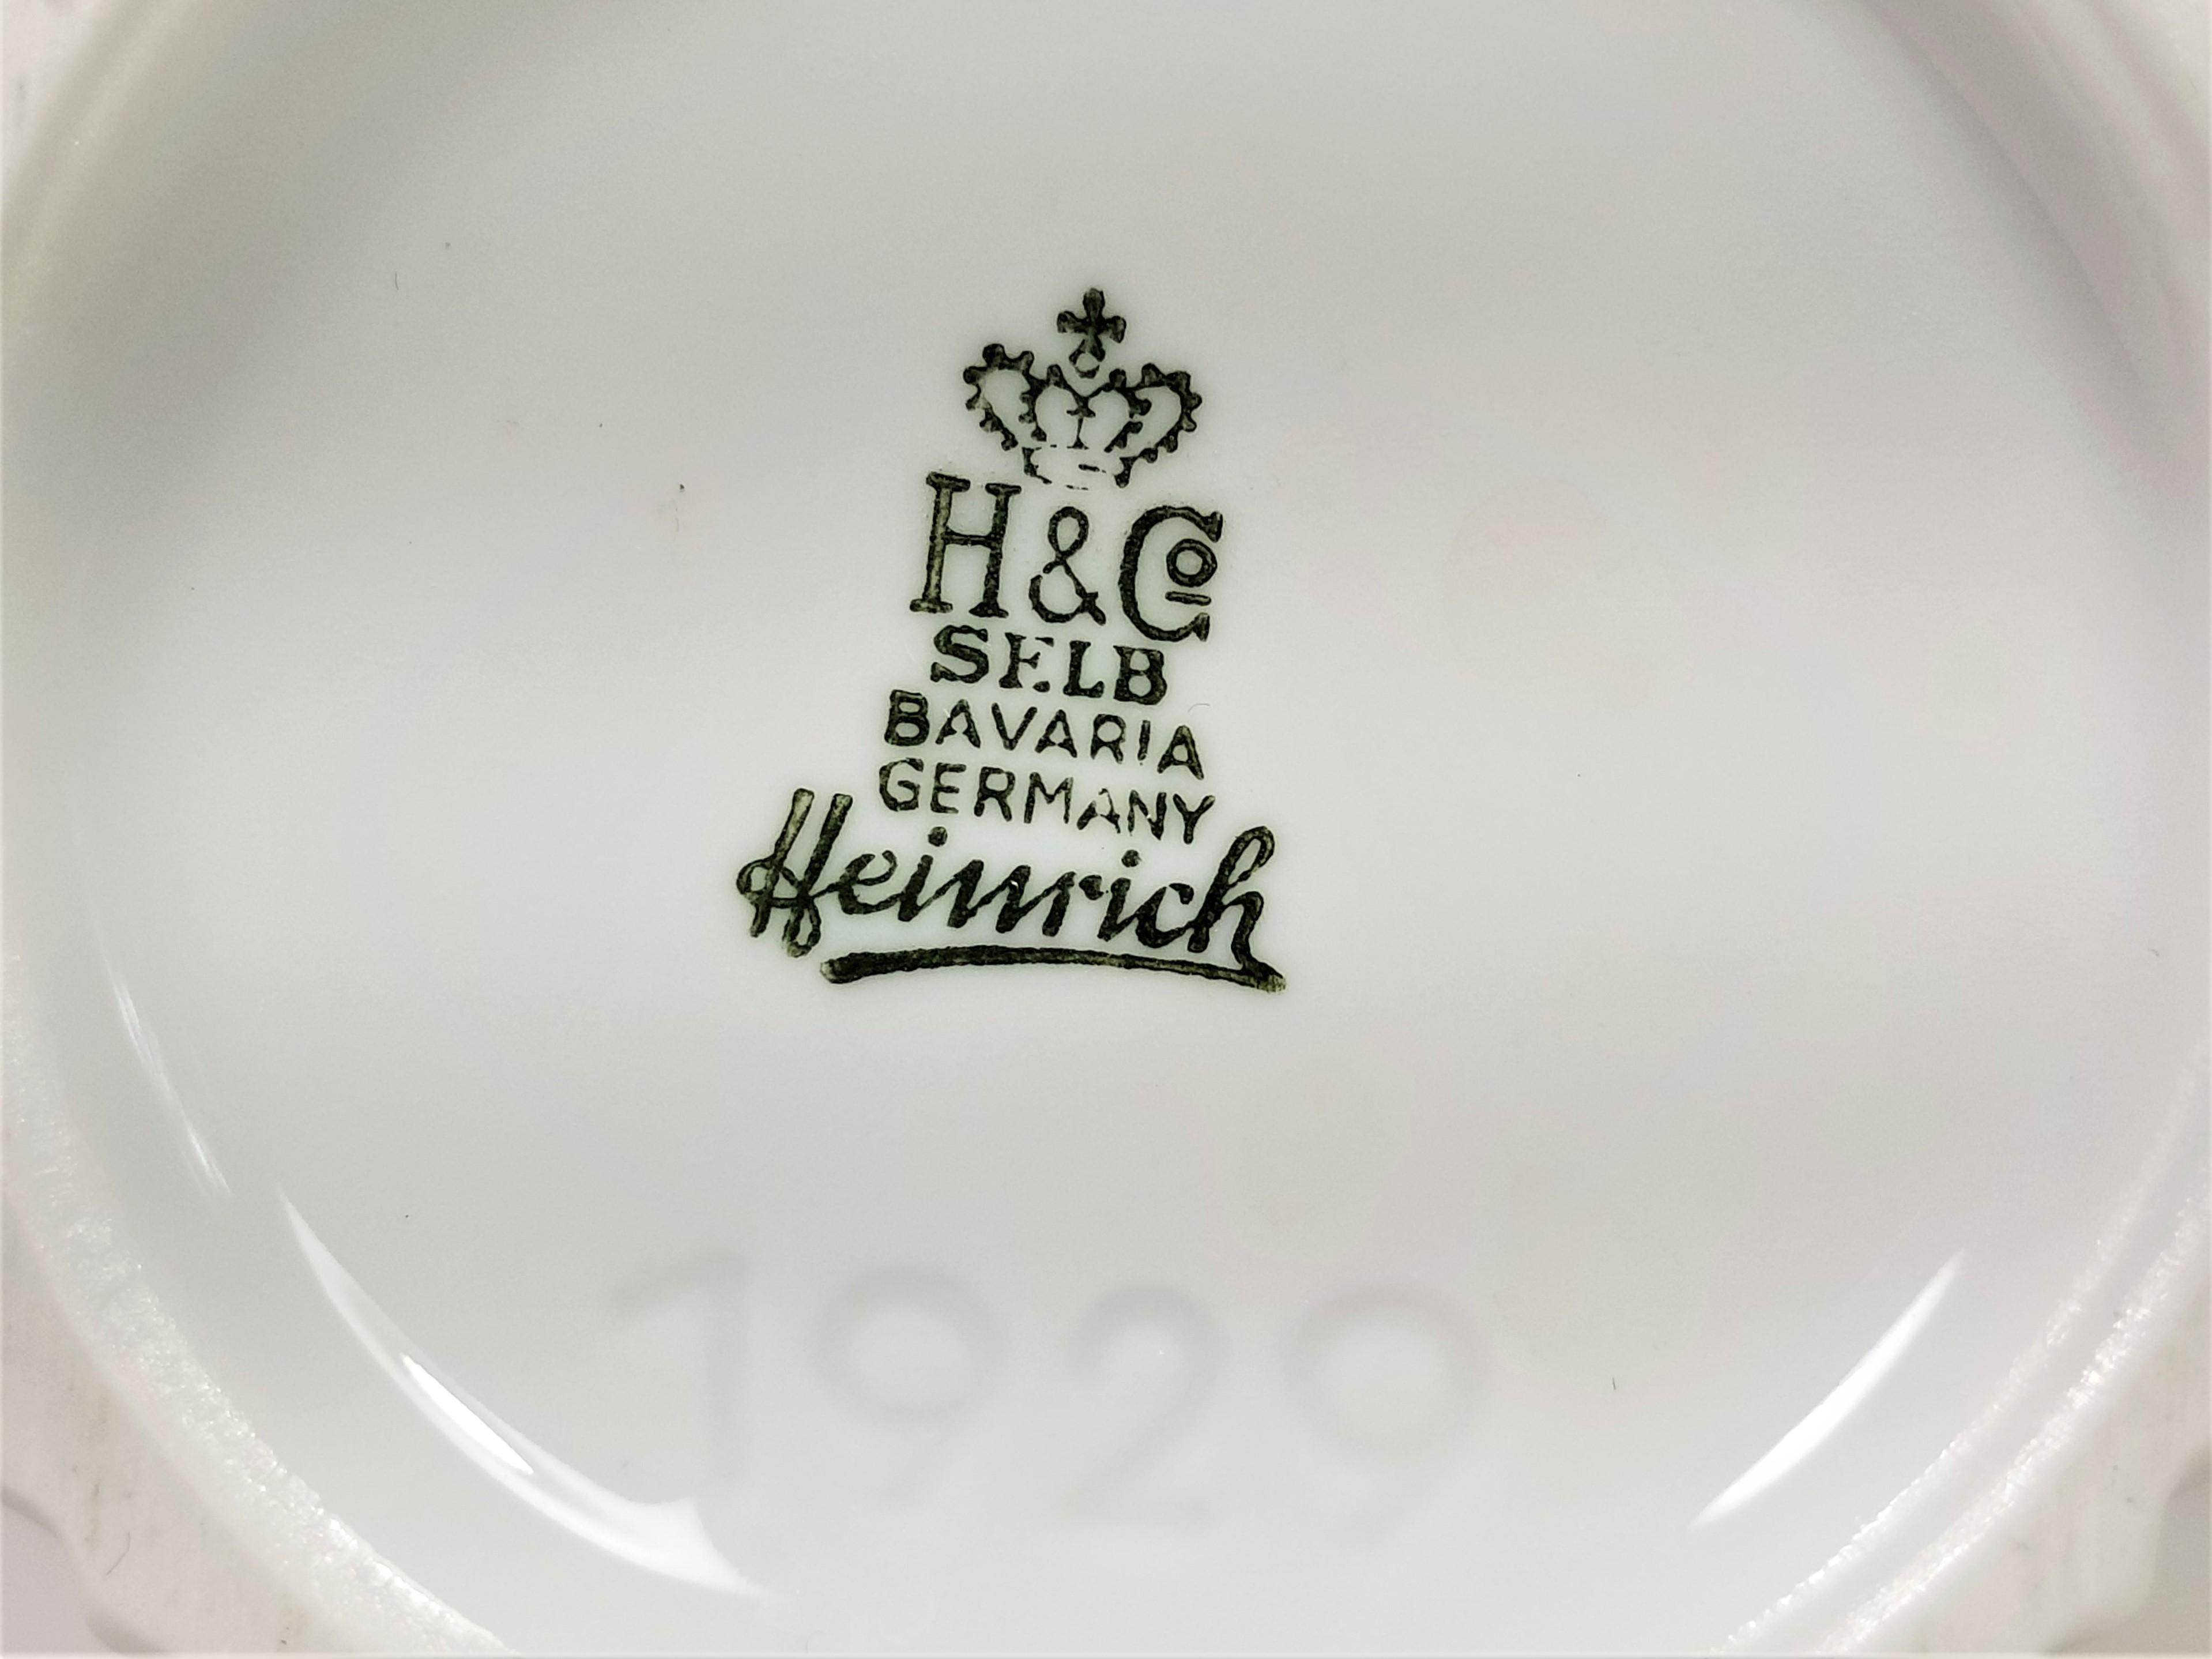 Vase White Porcelain Heinrich, H&Co Selb Bavaria, Germany  6